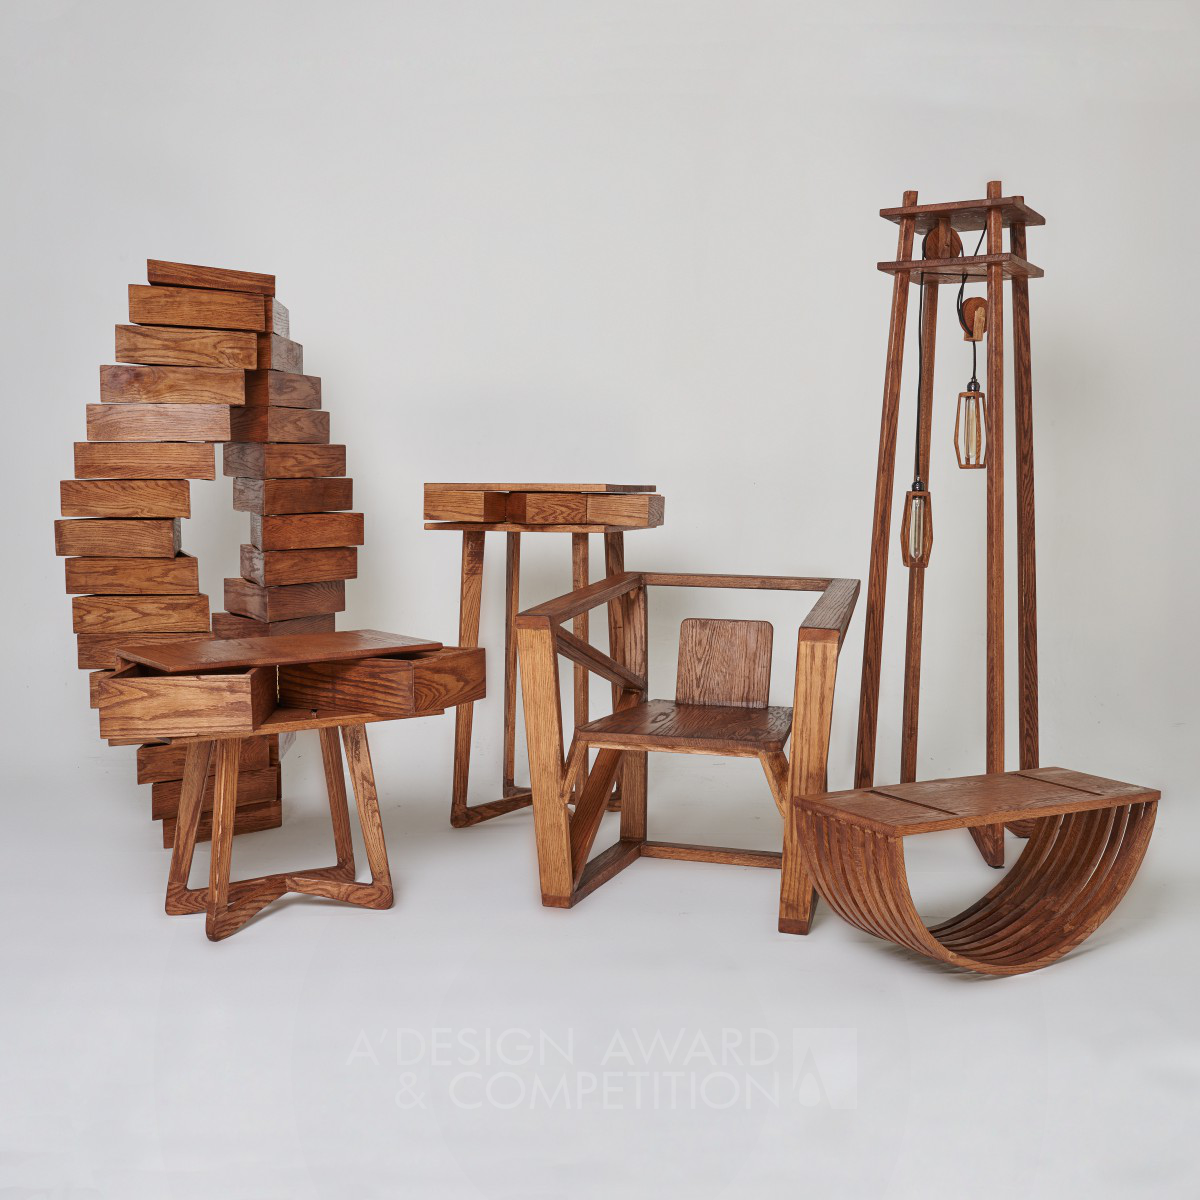 GEOMETRY Multifunctional furniture by Yifeng Wang